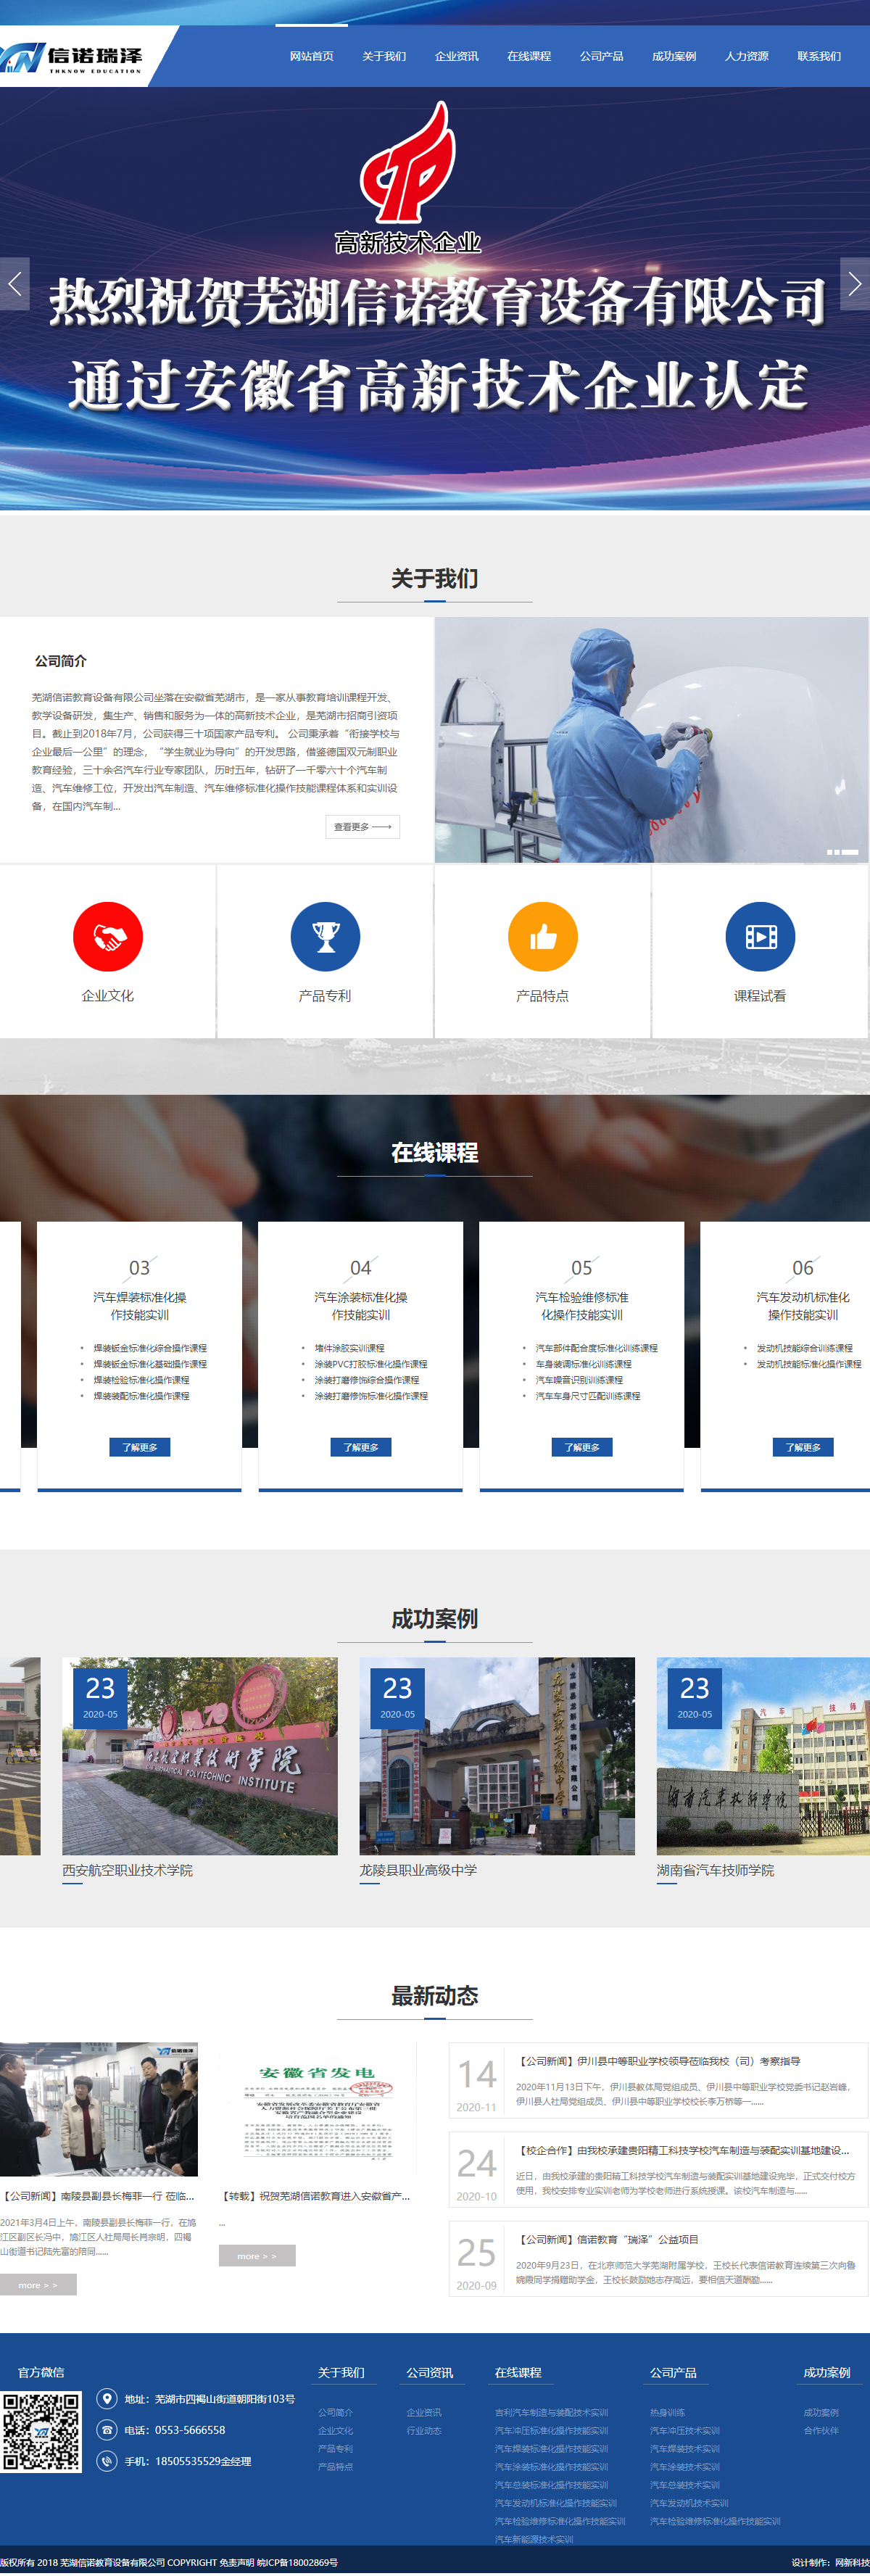 芜湖信诺教育设备有限公司网站案例